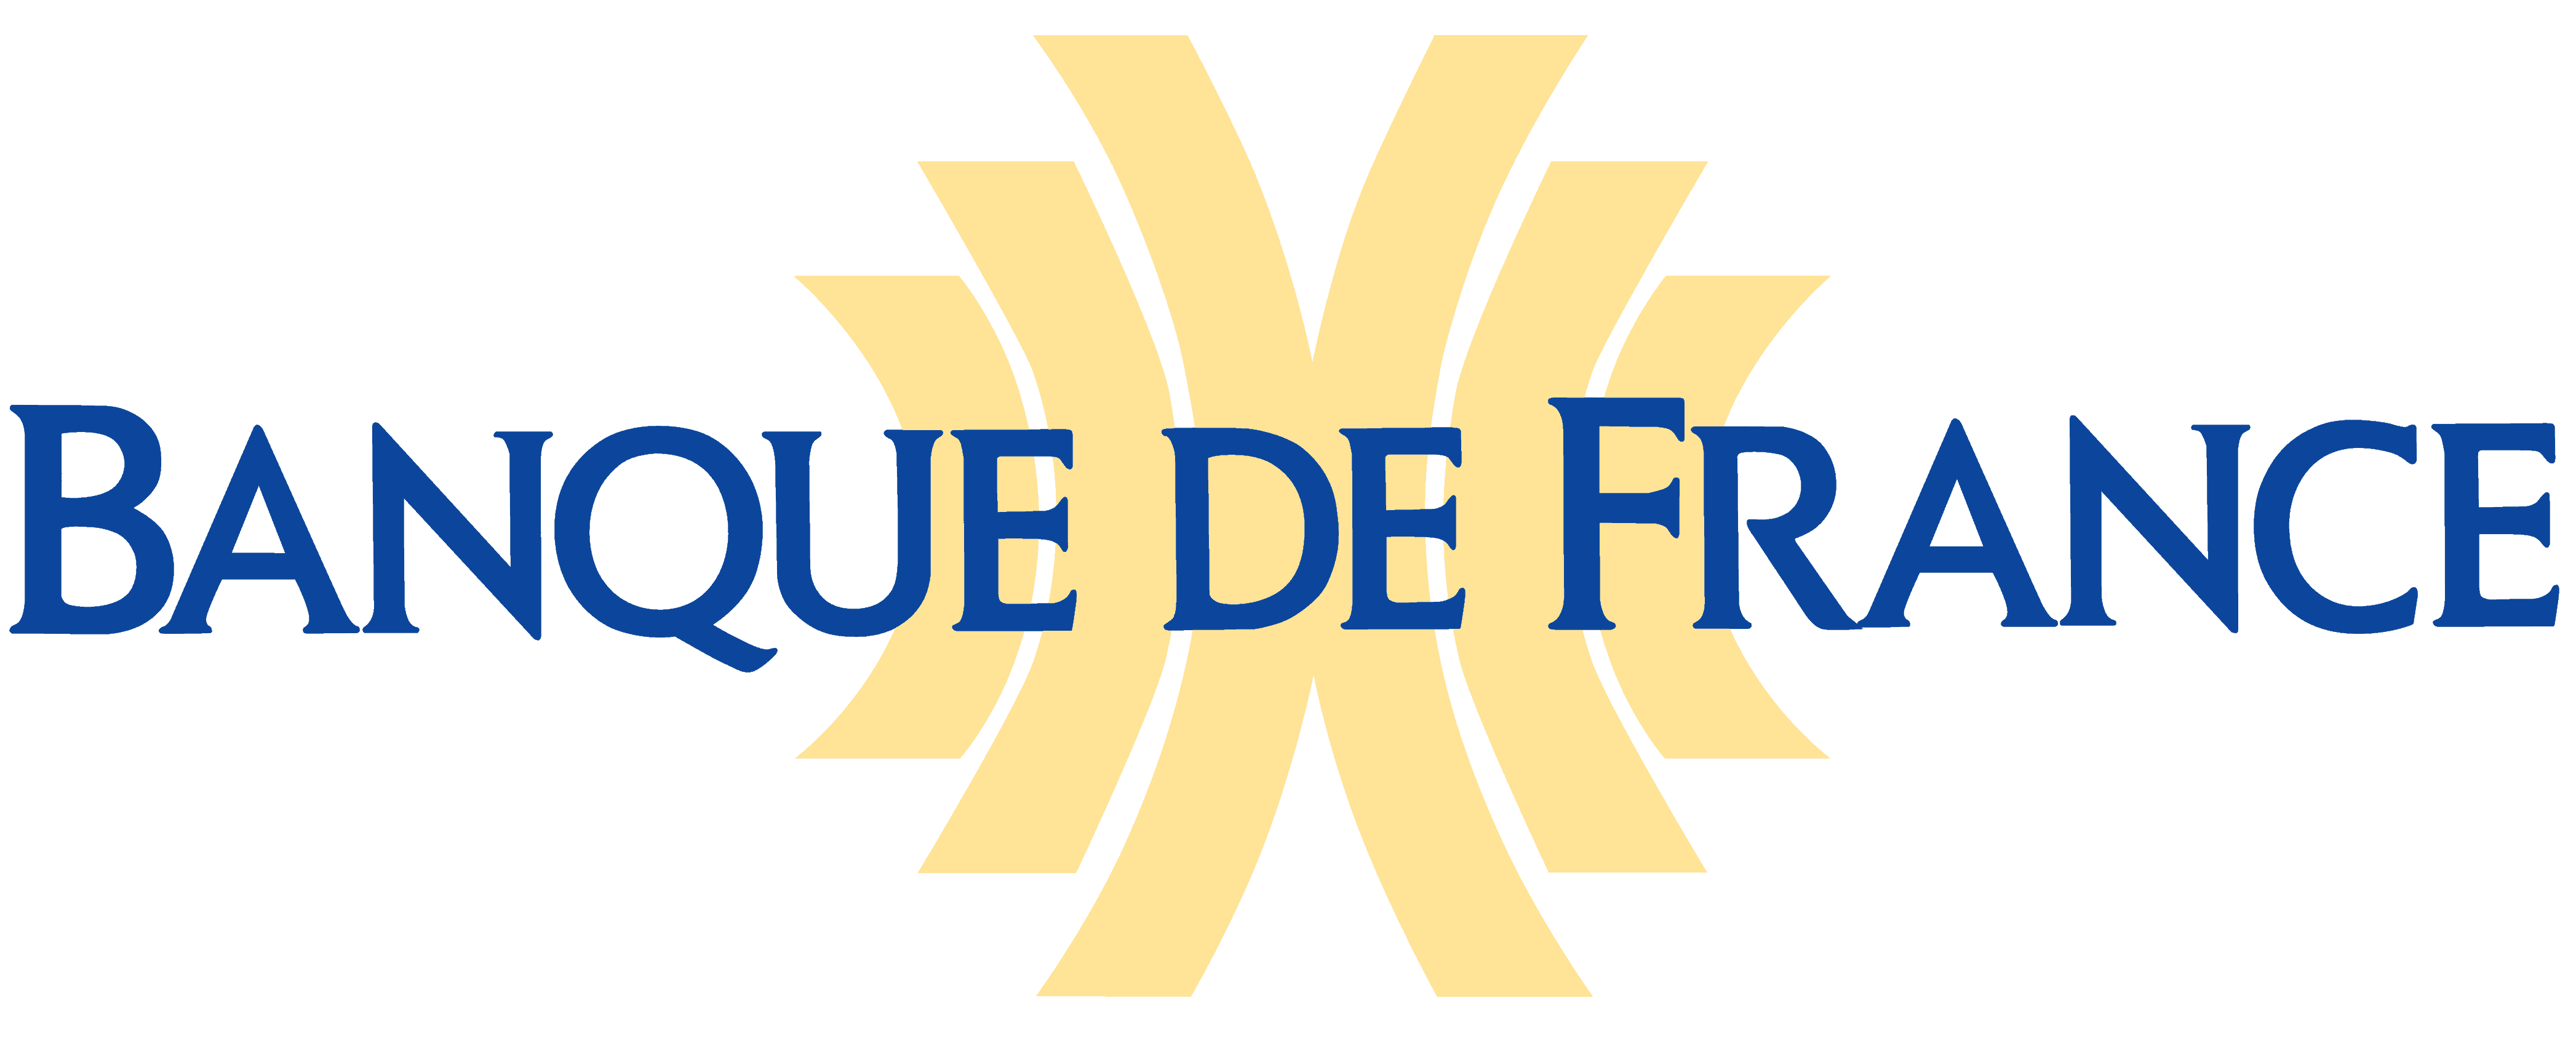 banque-de-france-bank-of-france-logo-1